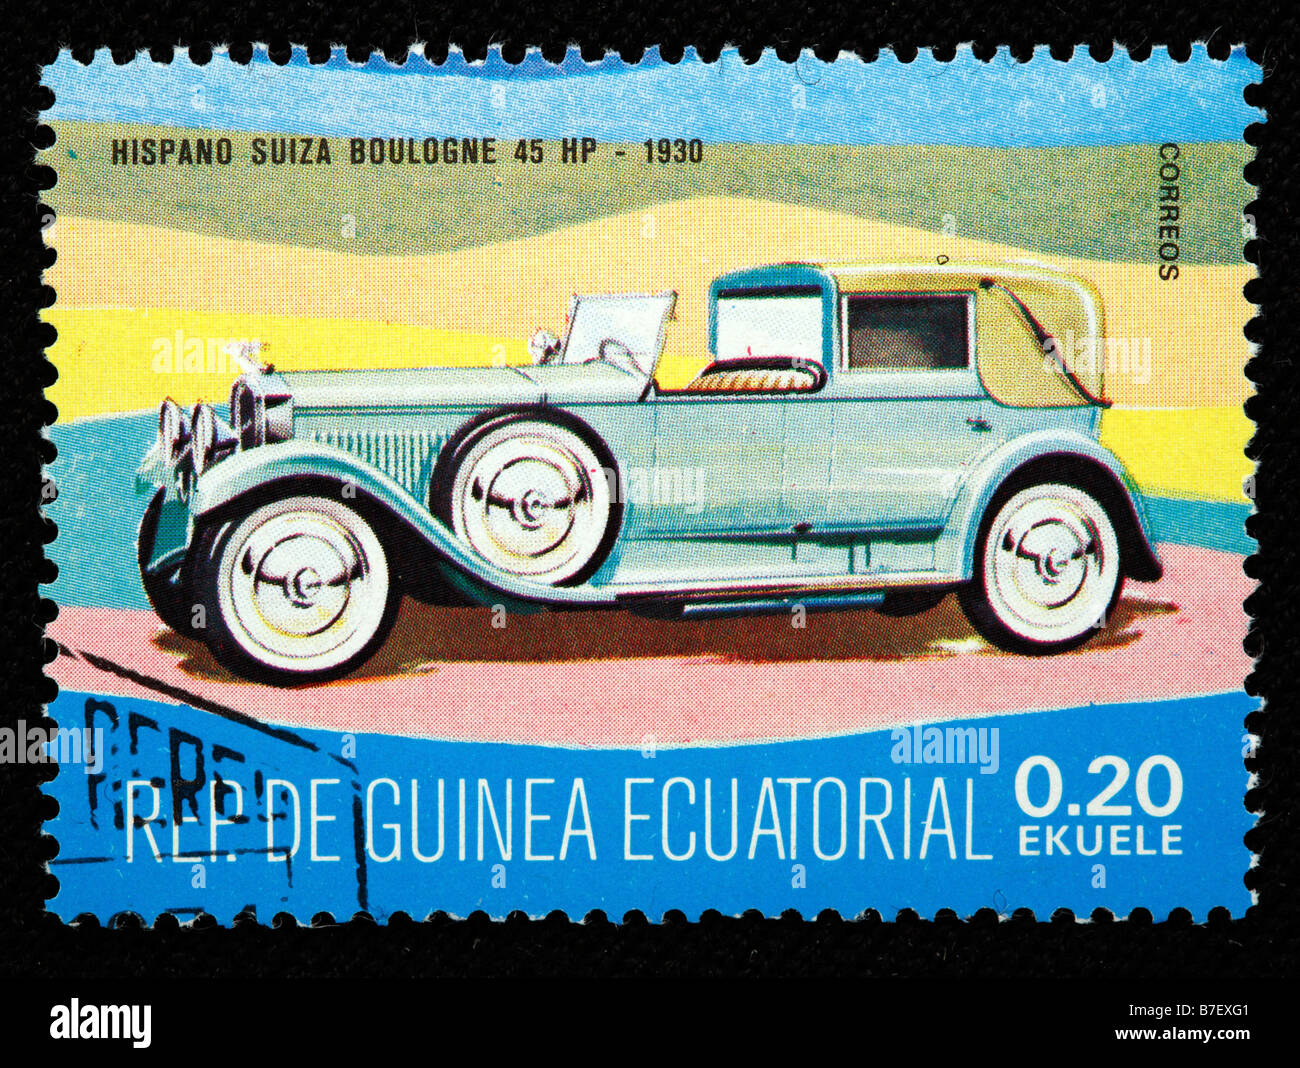 Storia dei trasporti, auto Hispano Suiza Boulogne 45 HP (1930), francobollo, Guinea equatoriale Foto Stock